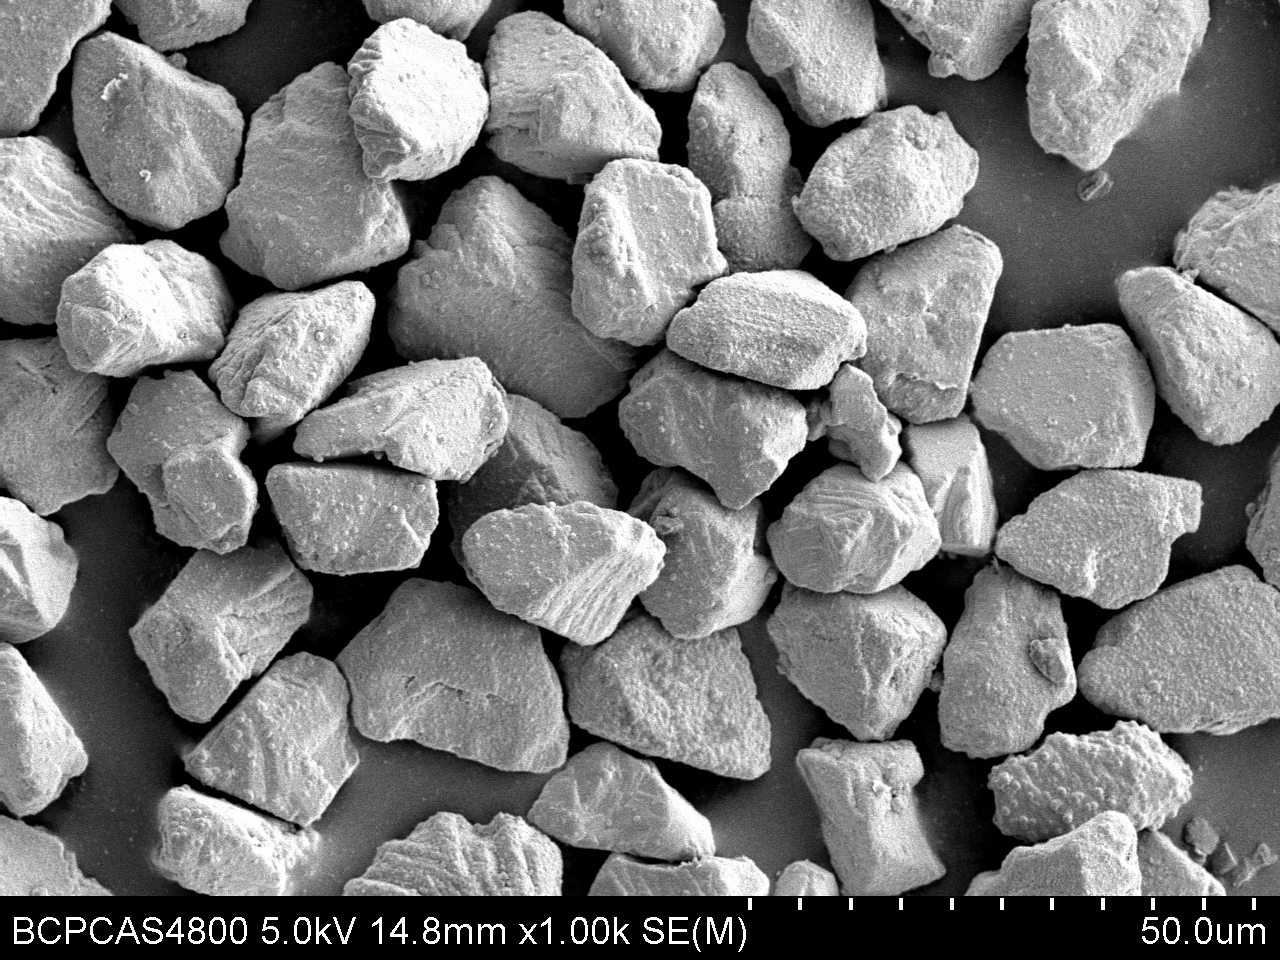 微米级金刚石磨粒表面处理技术及应用研究